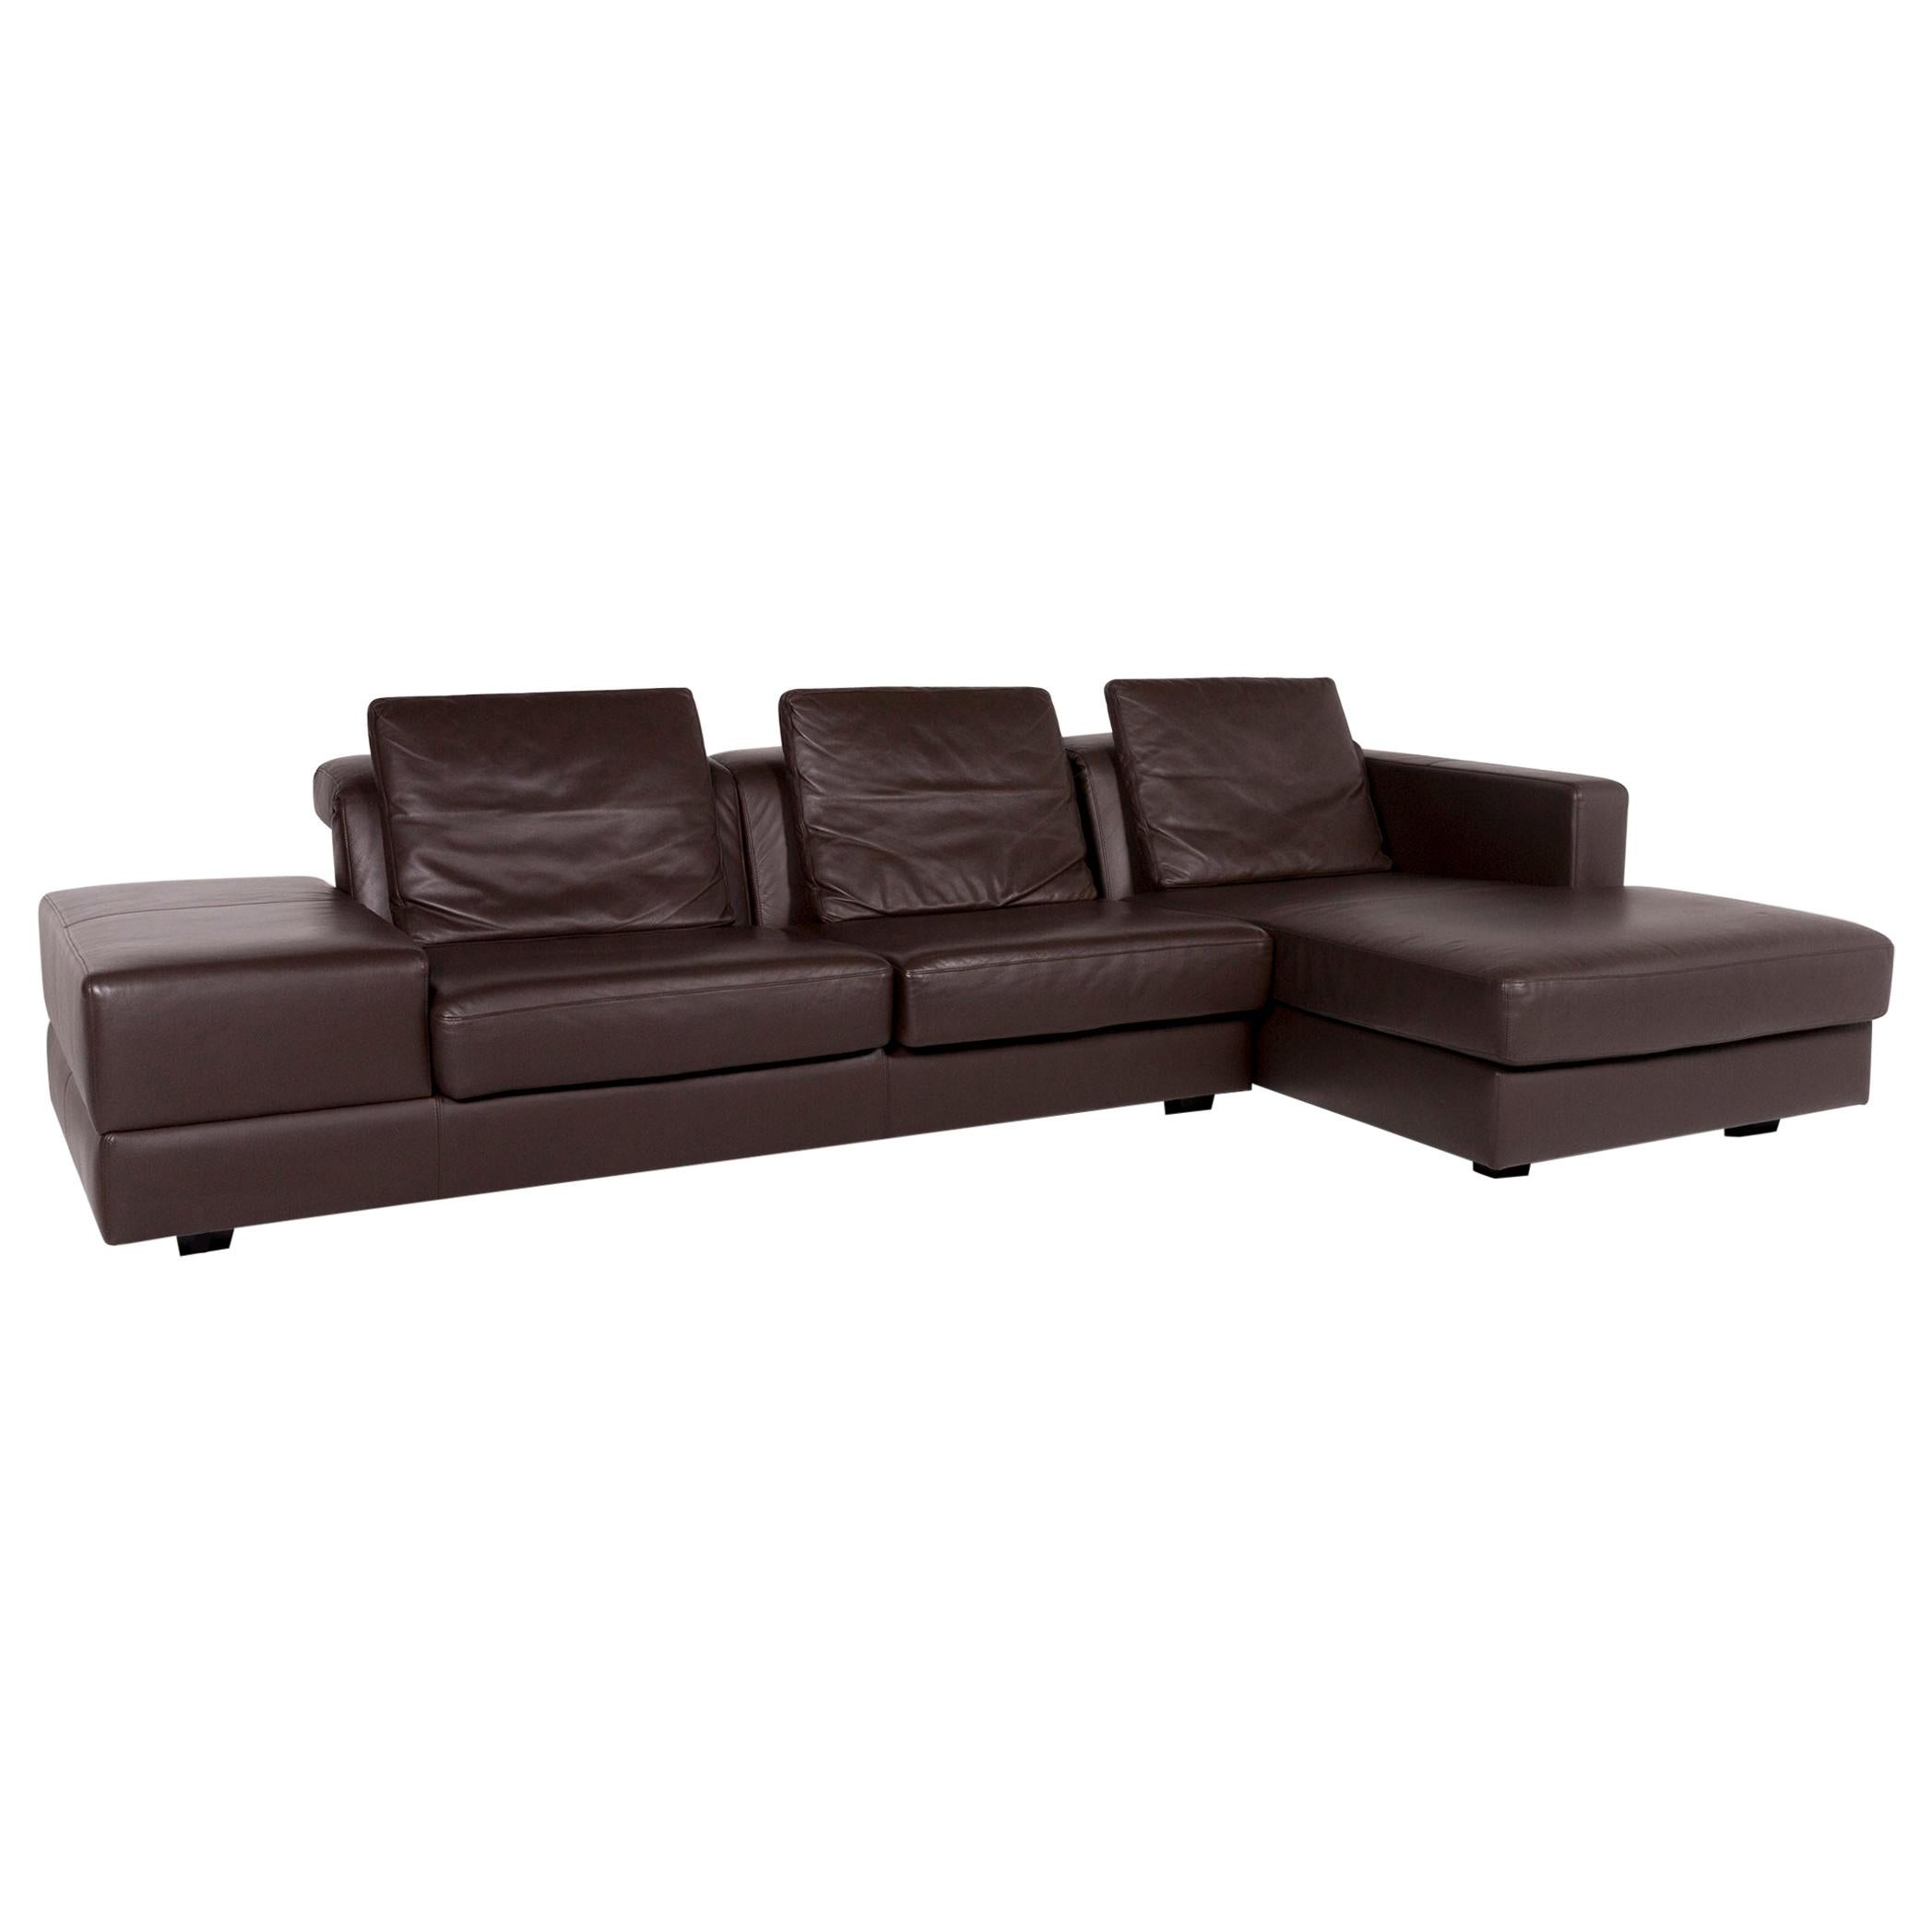 WK Wohnen Leather Corner Sofa Brown Dark Brown Sofa Couch